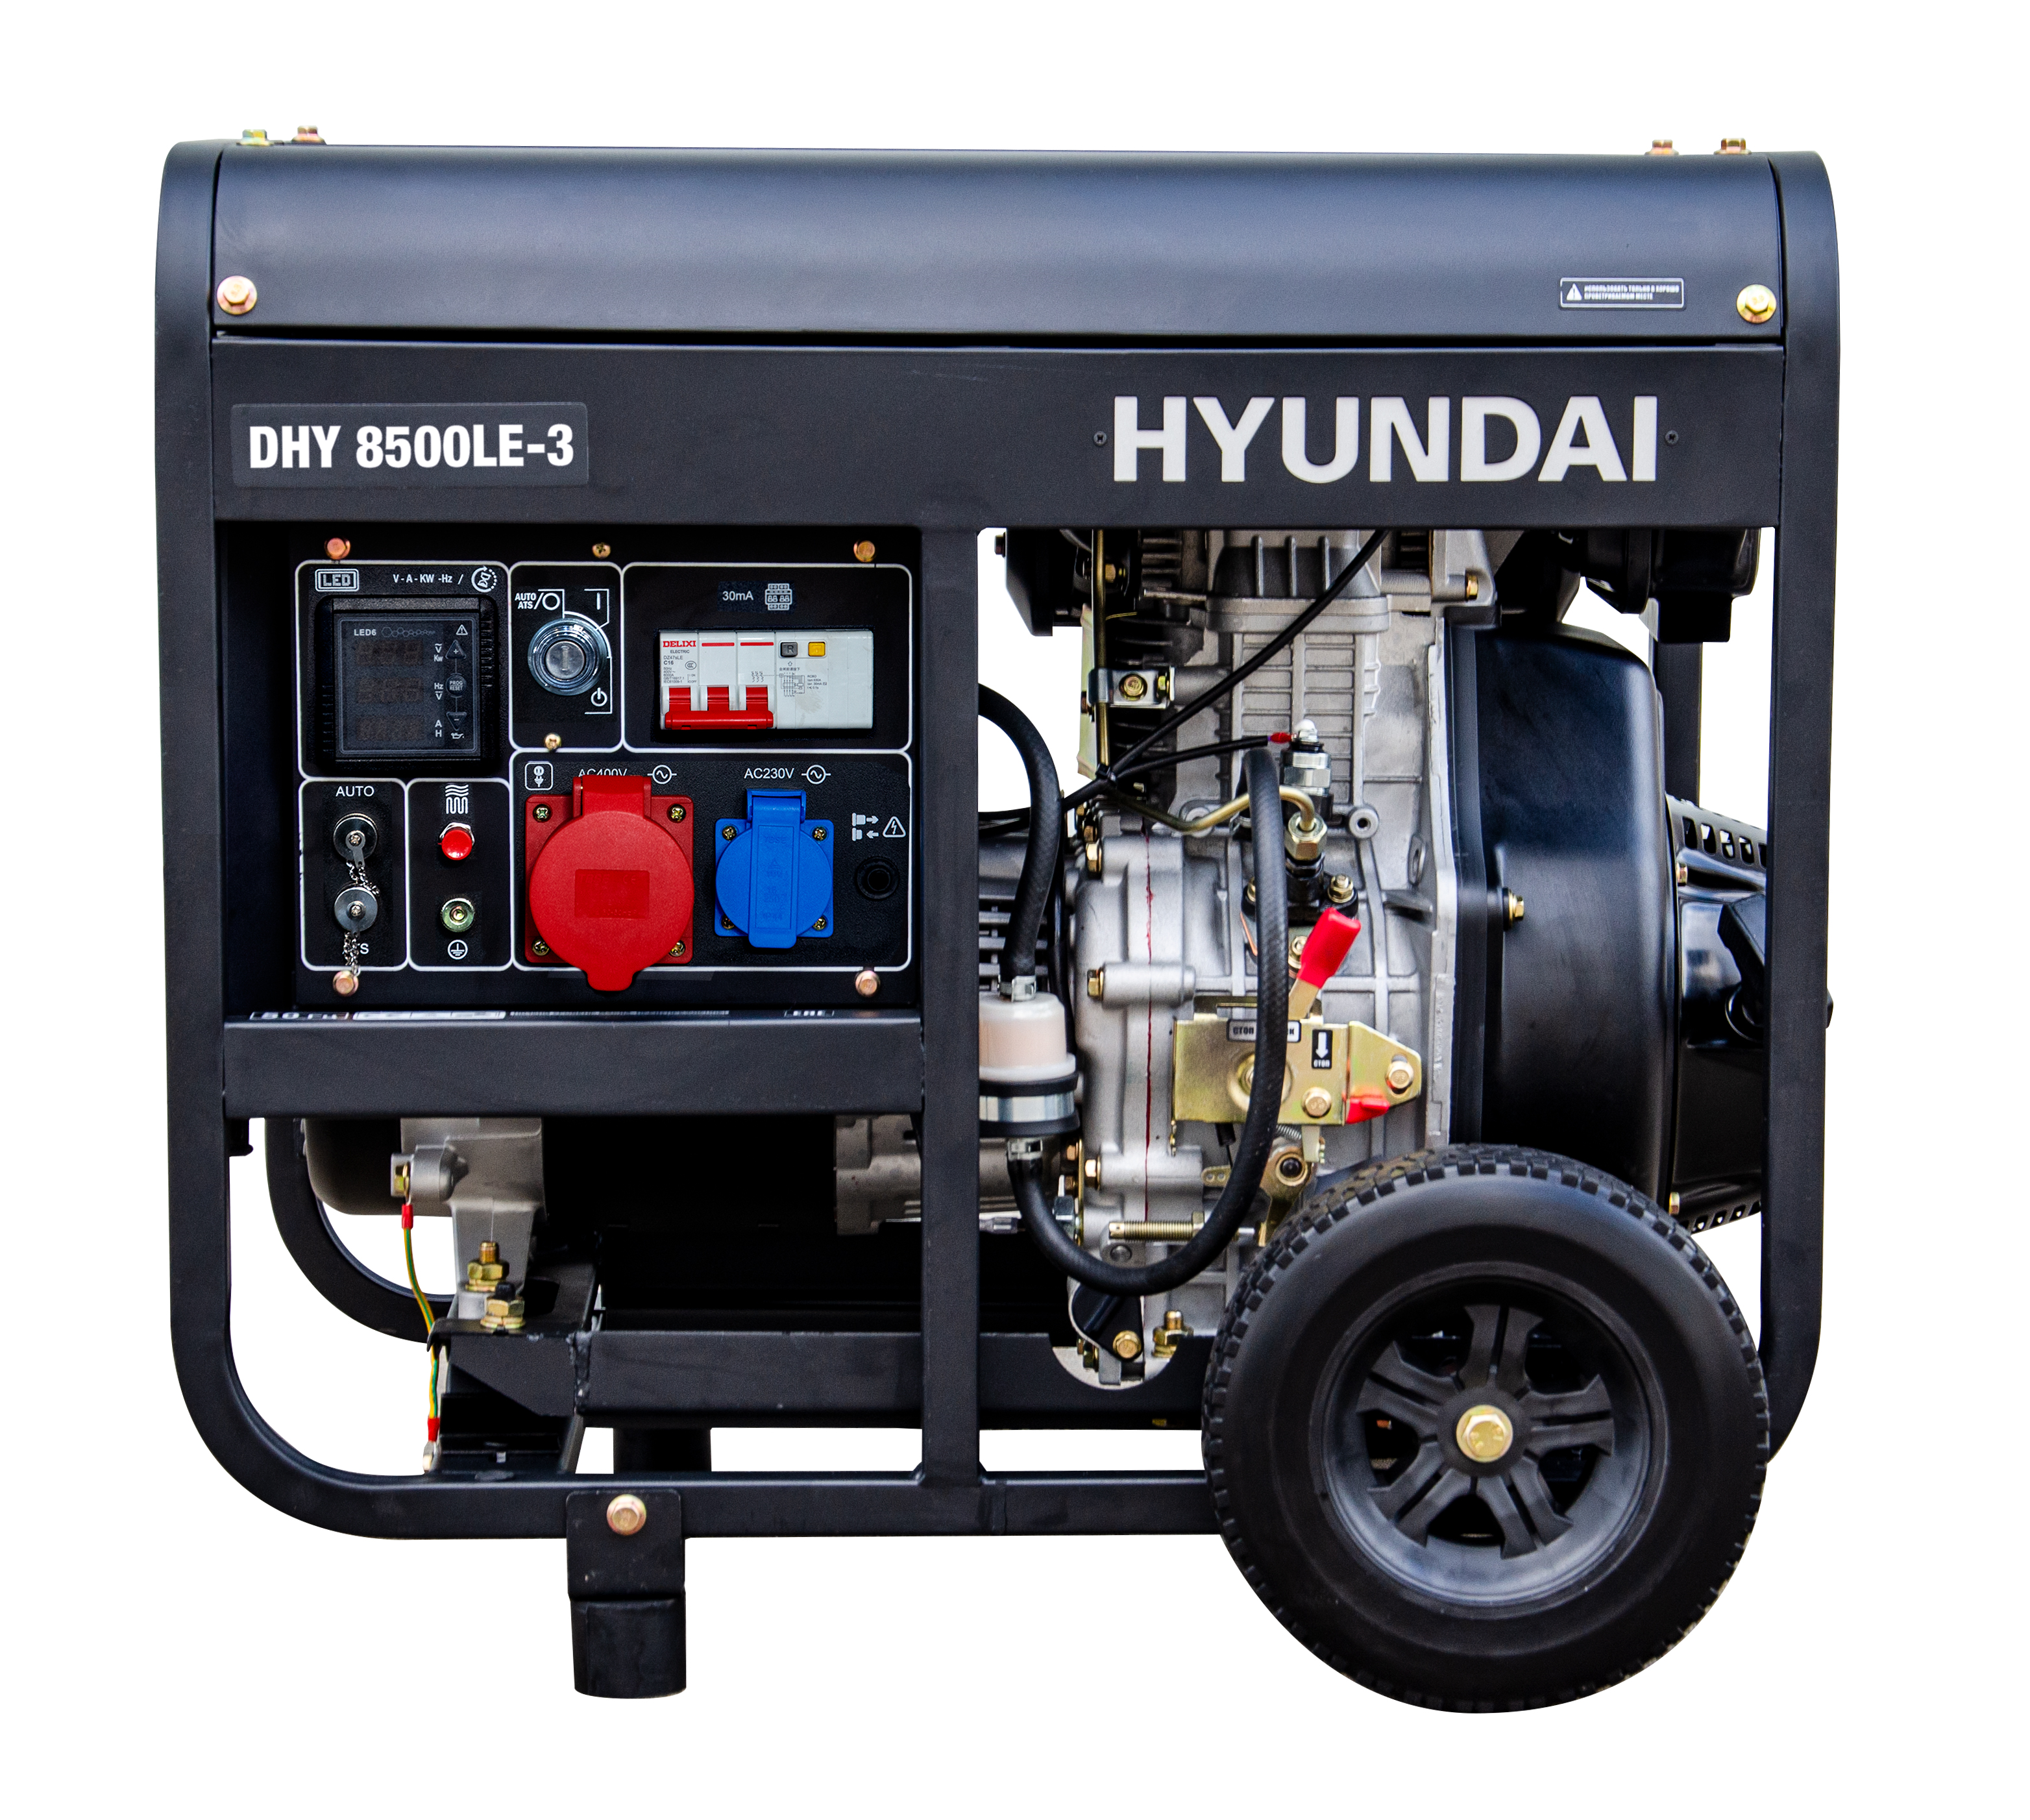 Дизельный генератор Hyundai DHY 8500LE-3 генератор дизельный fubag ds 6500aes 646233